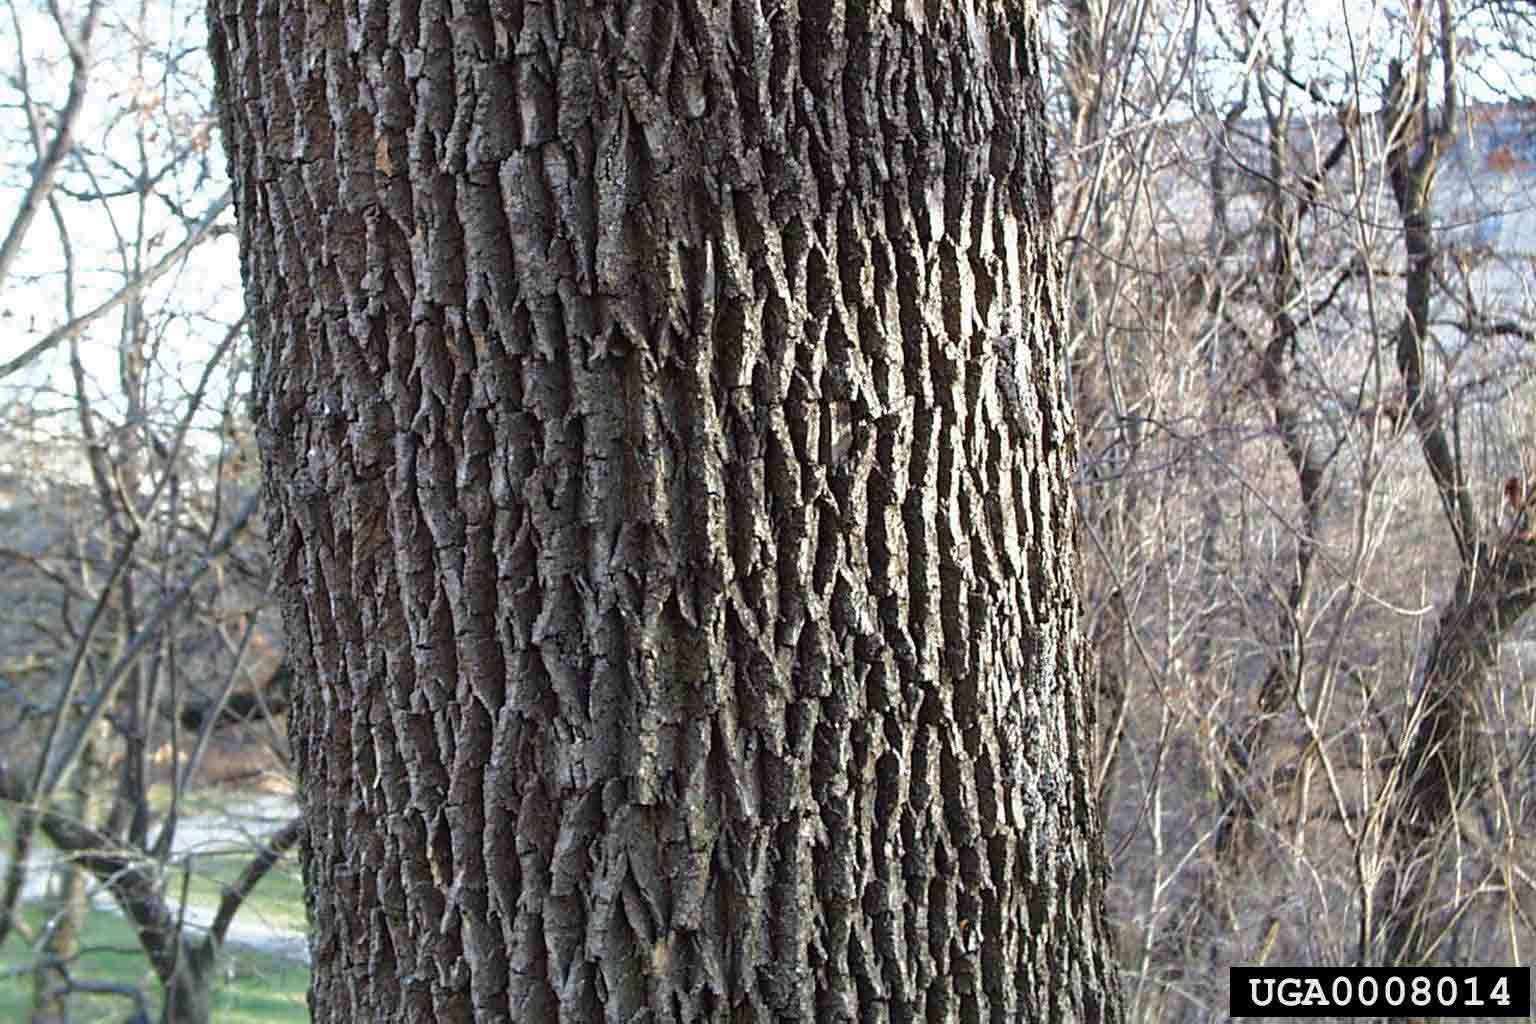 White ash bark on trunk